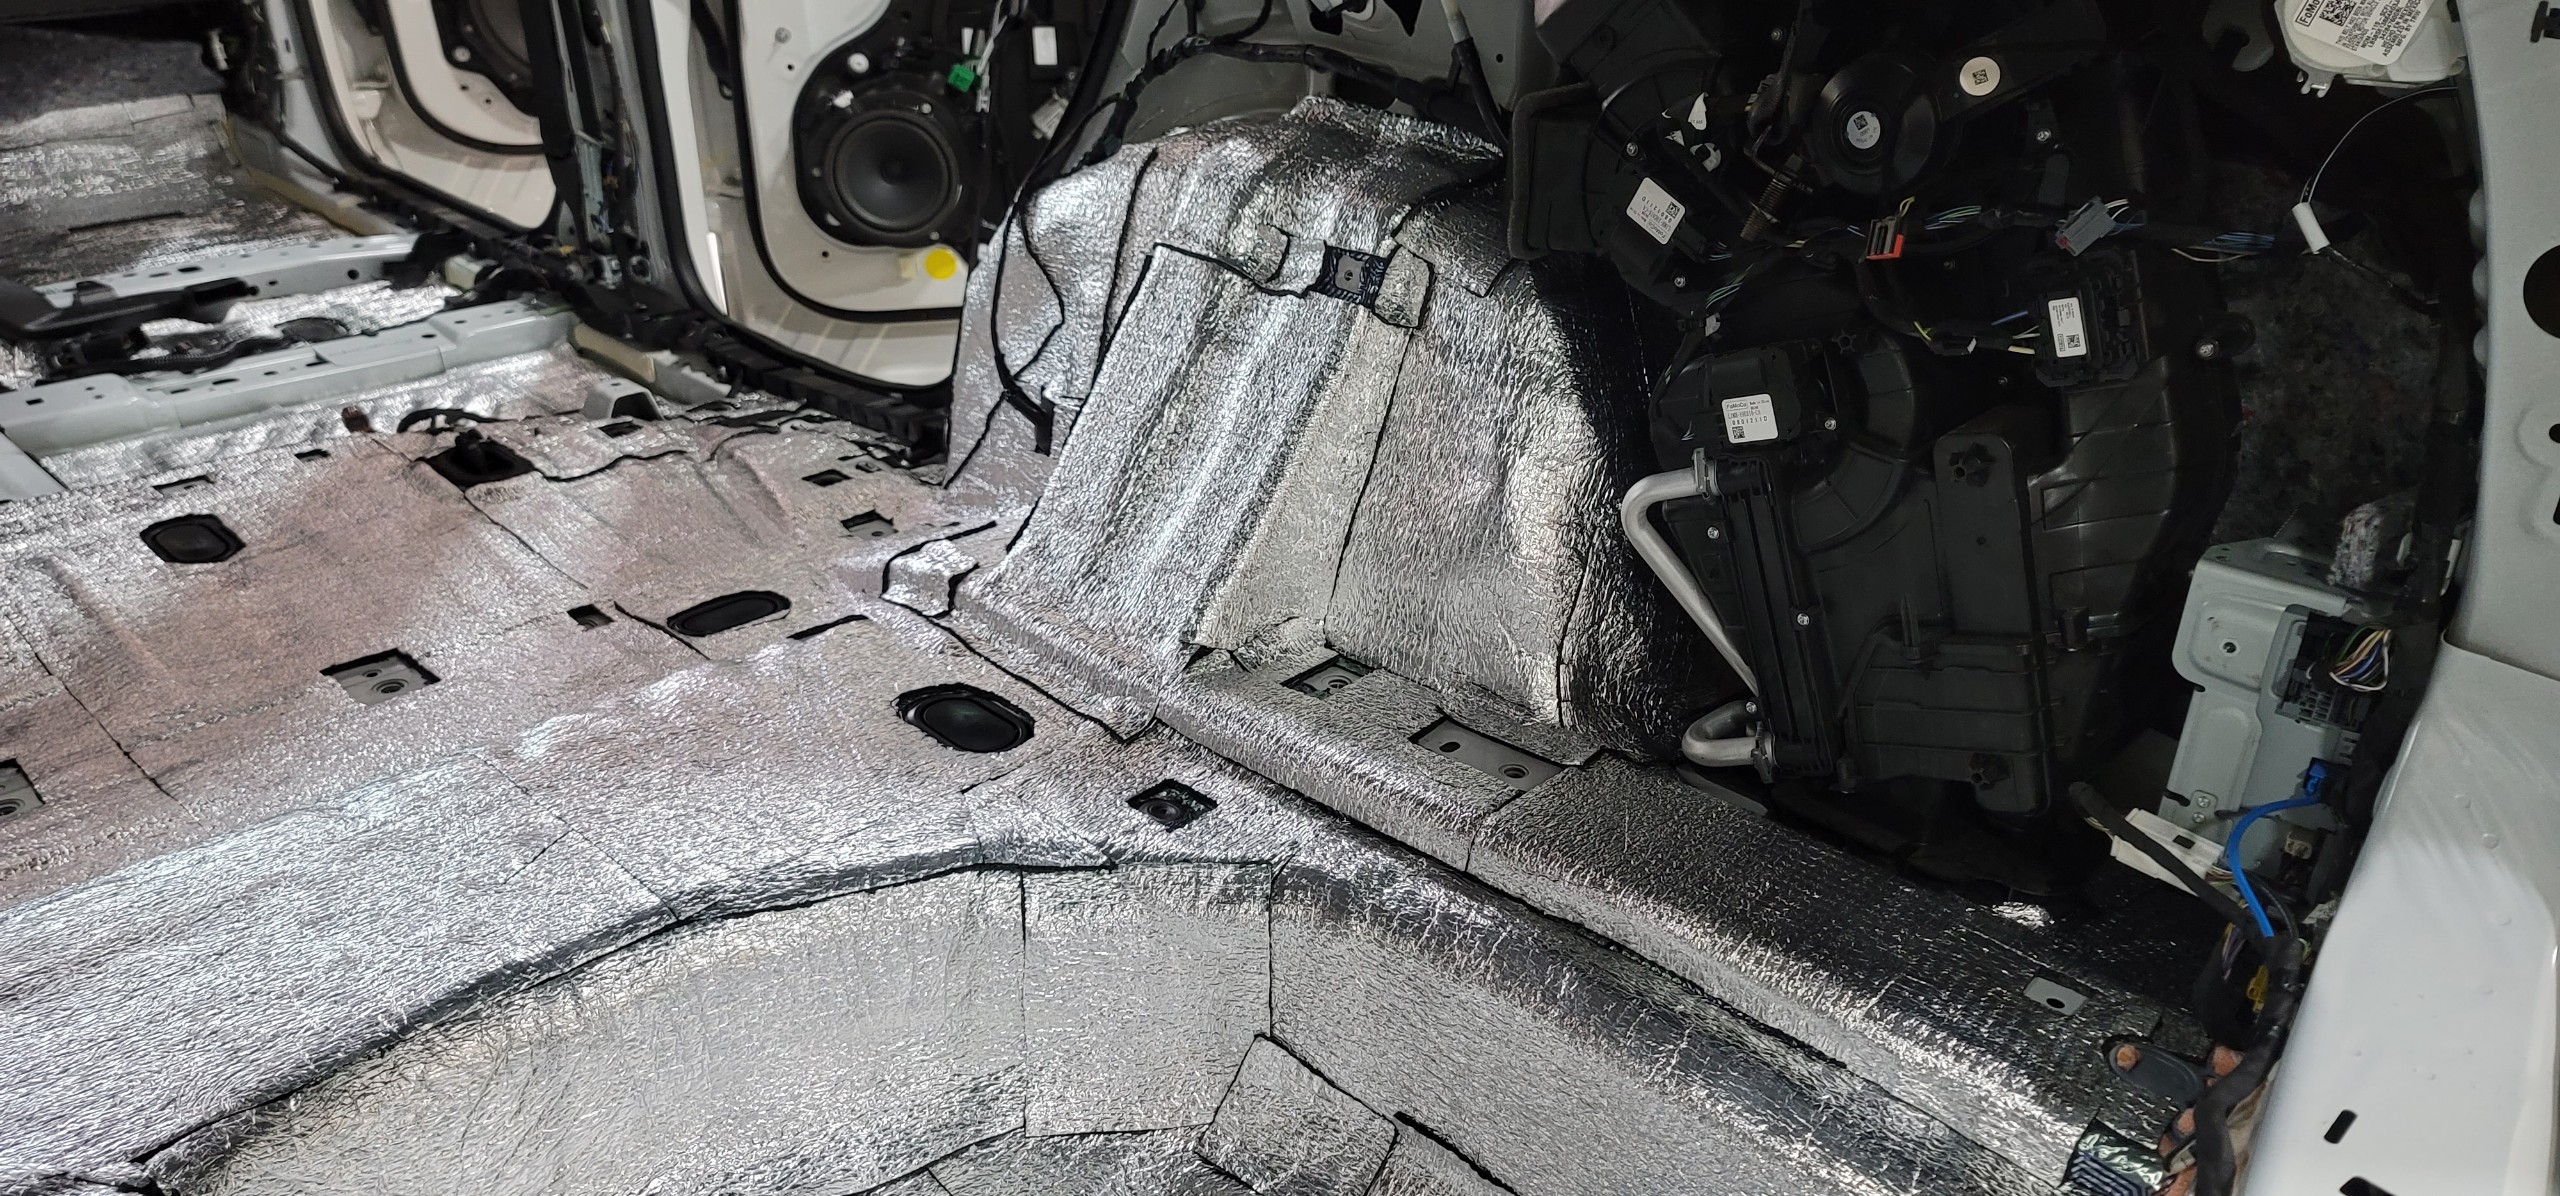 Vật liệu AutoFun SIM A4 PLUS thi công phía trên lớp AutoFun VDM M3HX khu vực sàn xe và vòm cua lốp trong - làm dịu đi tiếng dội lốp xe hiệu quả